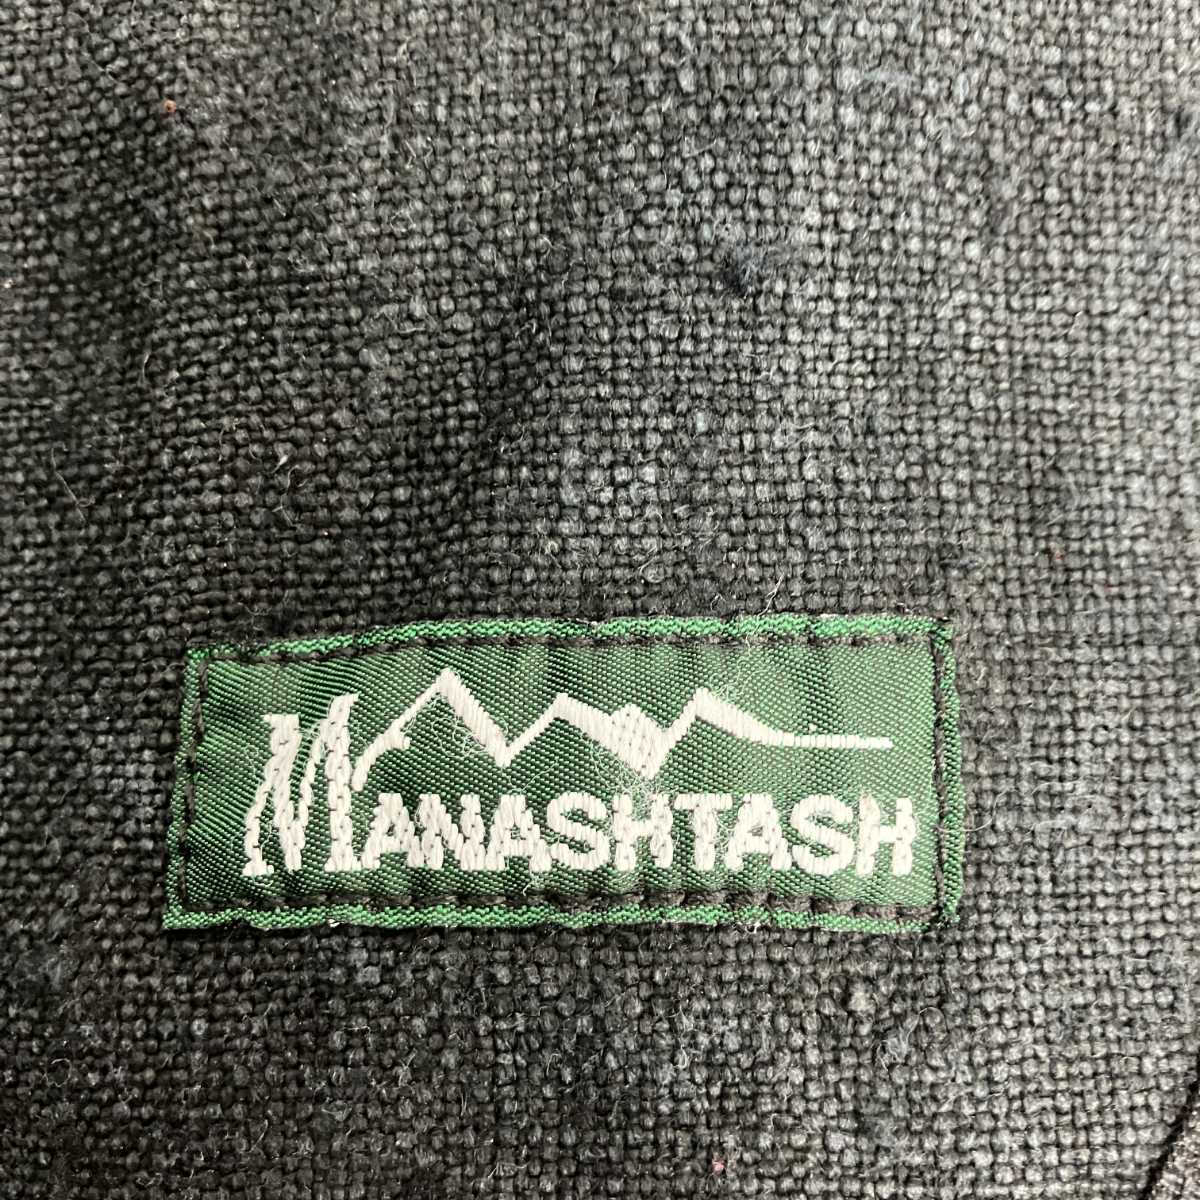 メッセンジャー バッグ hemp messenger bag black ブラック MANASTASH レア 90'S